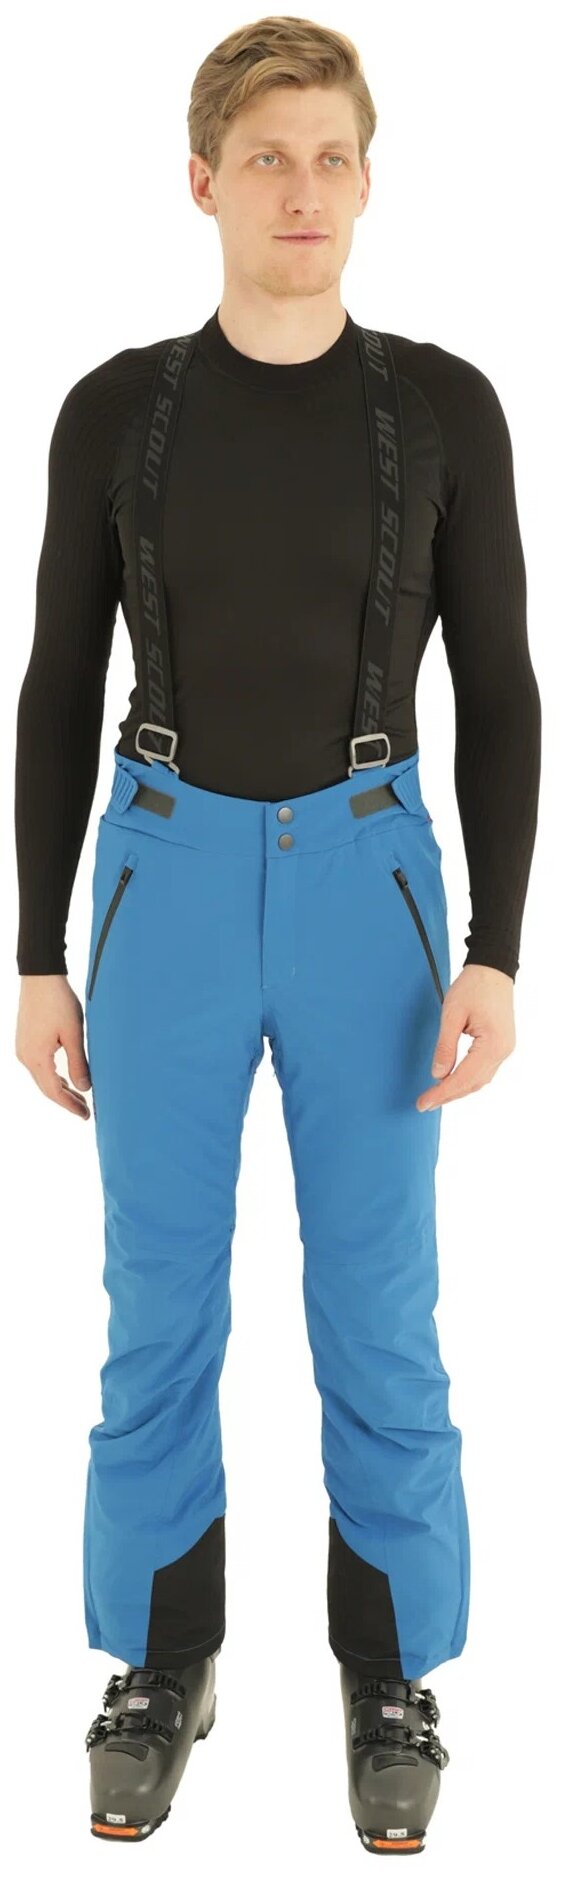 брюки West scout Mars M, карманы, мембрана, регулировка объема талии, утепленные, водонепроницаемые